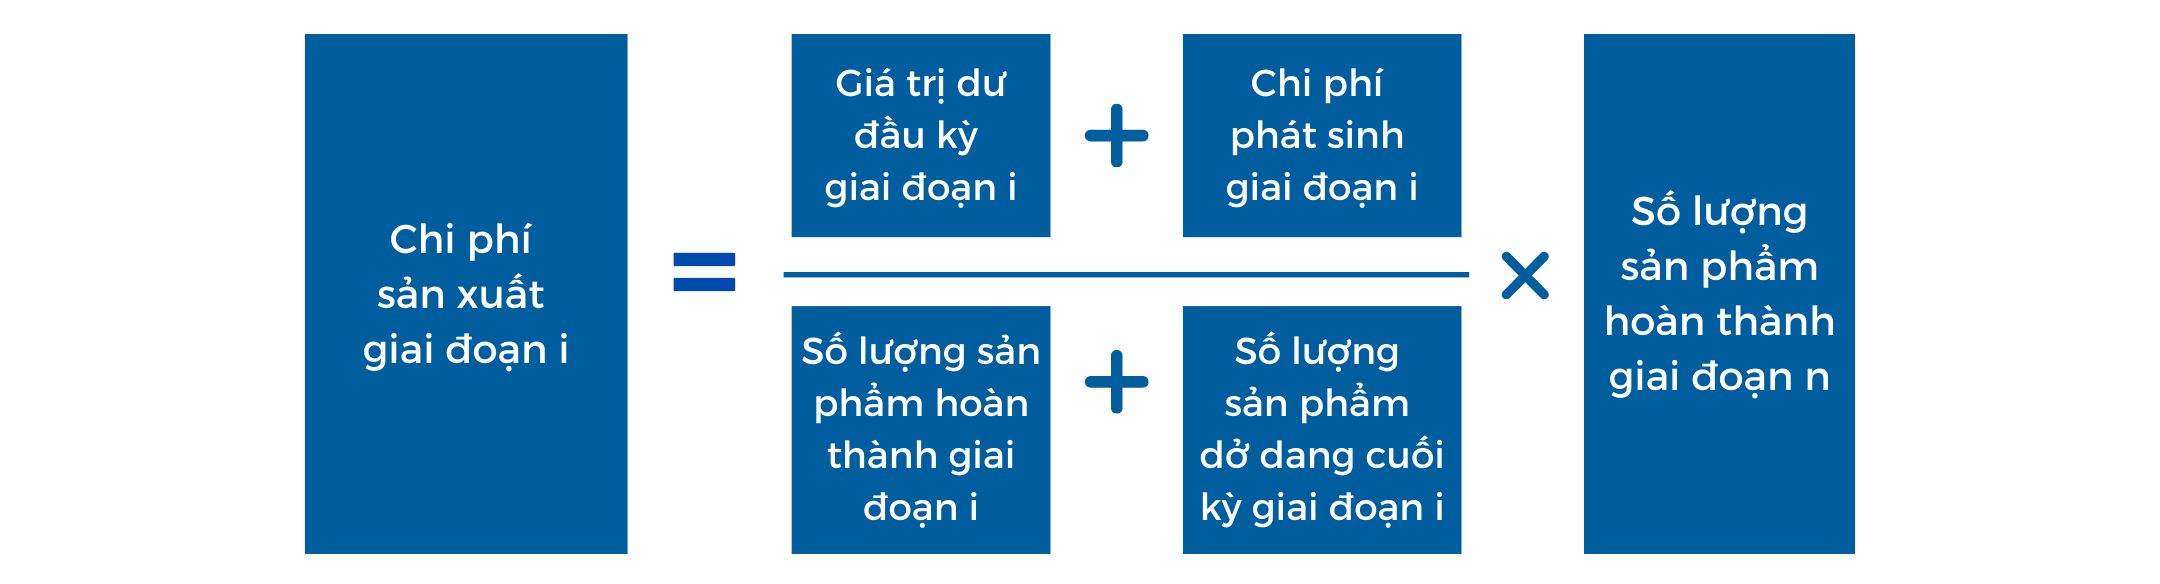 Phuong phap tinh gia thanh ket chuyen song song2 - Tính giá thành sản phẩm: Bài toán muôn thuở với các doanh nghiệp sản xuất